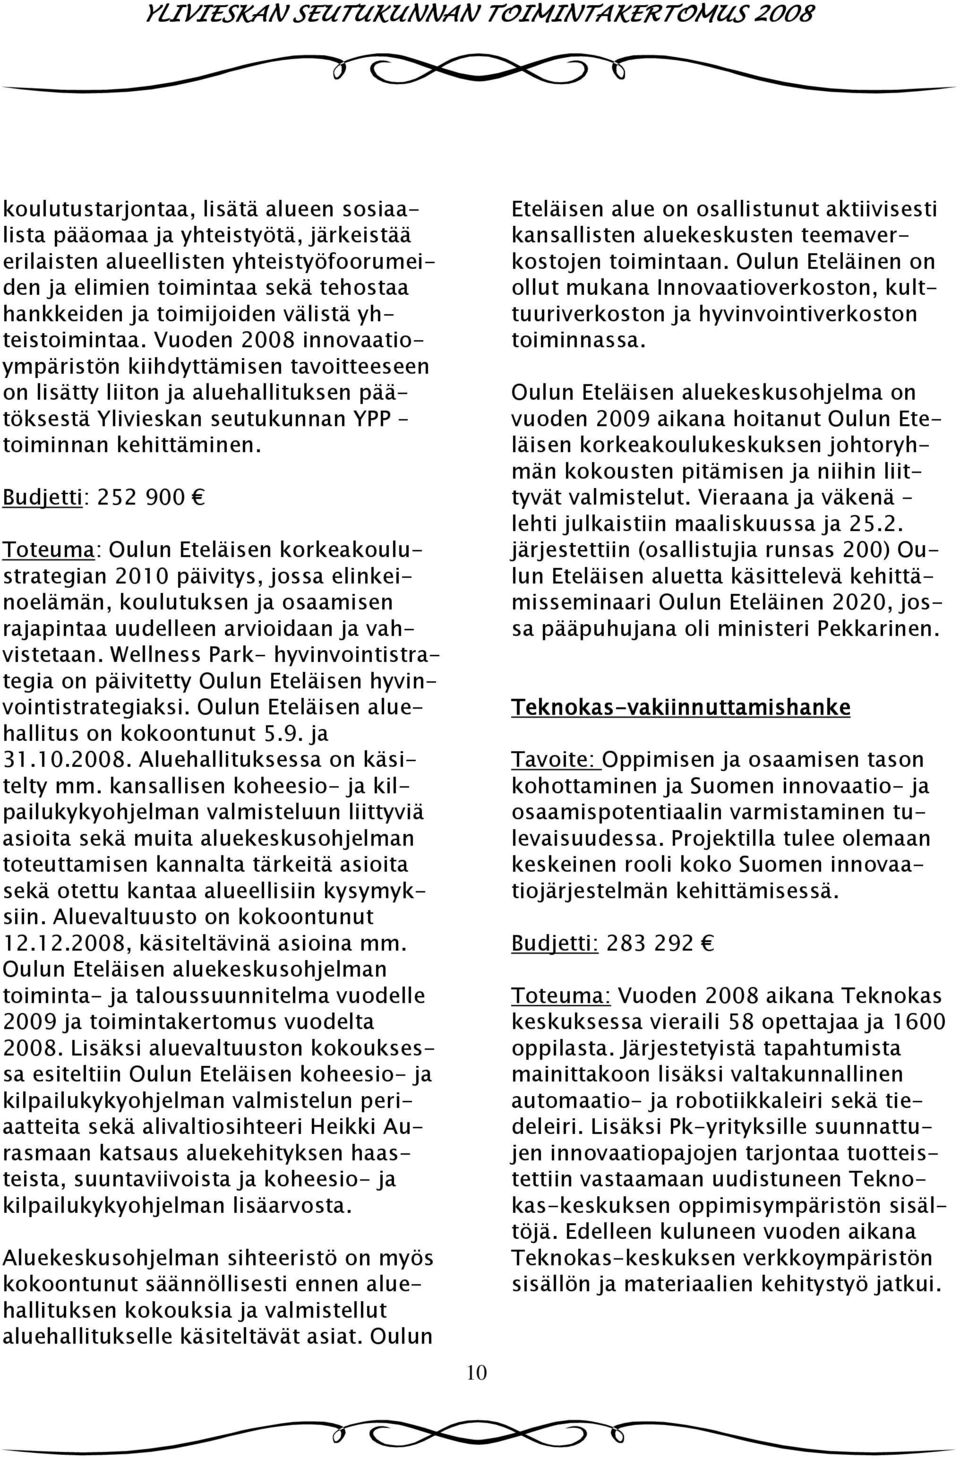 Budjetti: 252 900 Toteuma: Oulun Eteläisen korkeakoulustrategian 2010 päivitys, jossa elinkeinoelämän, koulutuksen ja osaamisen rajapintaa uudelleen arvioidaan ja vahvistetaan.